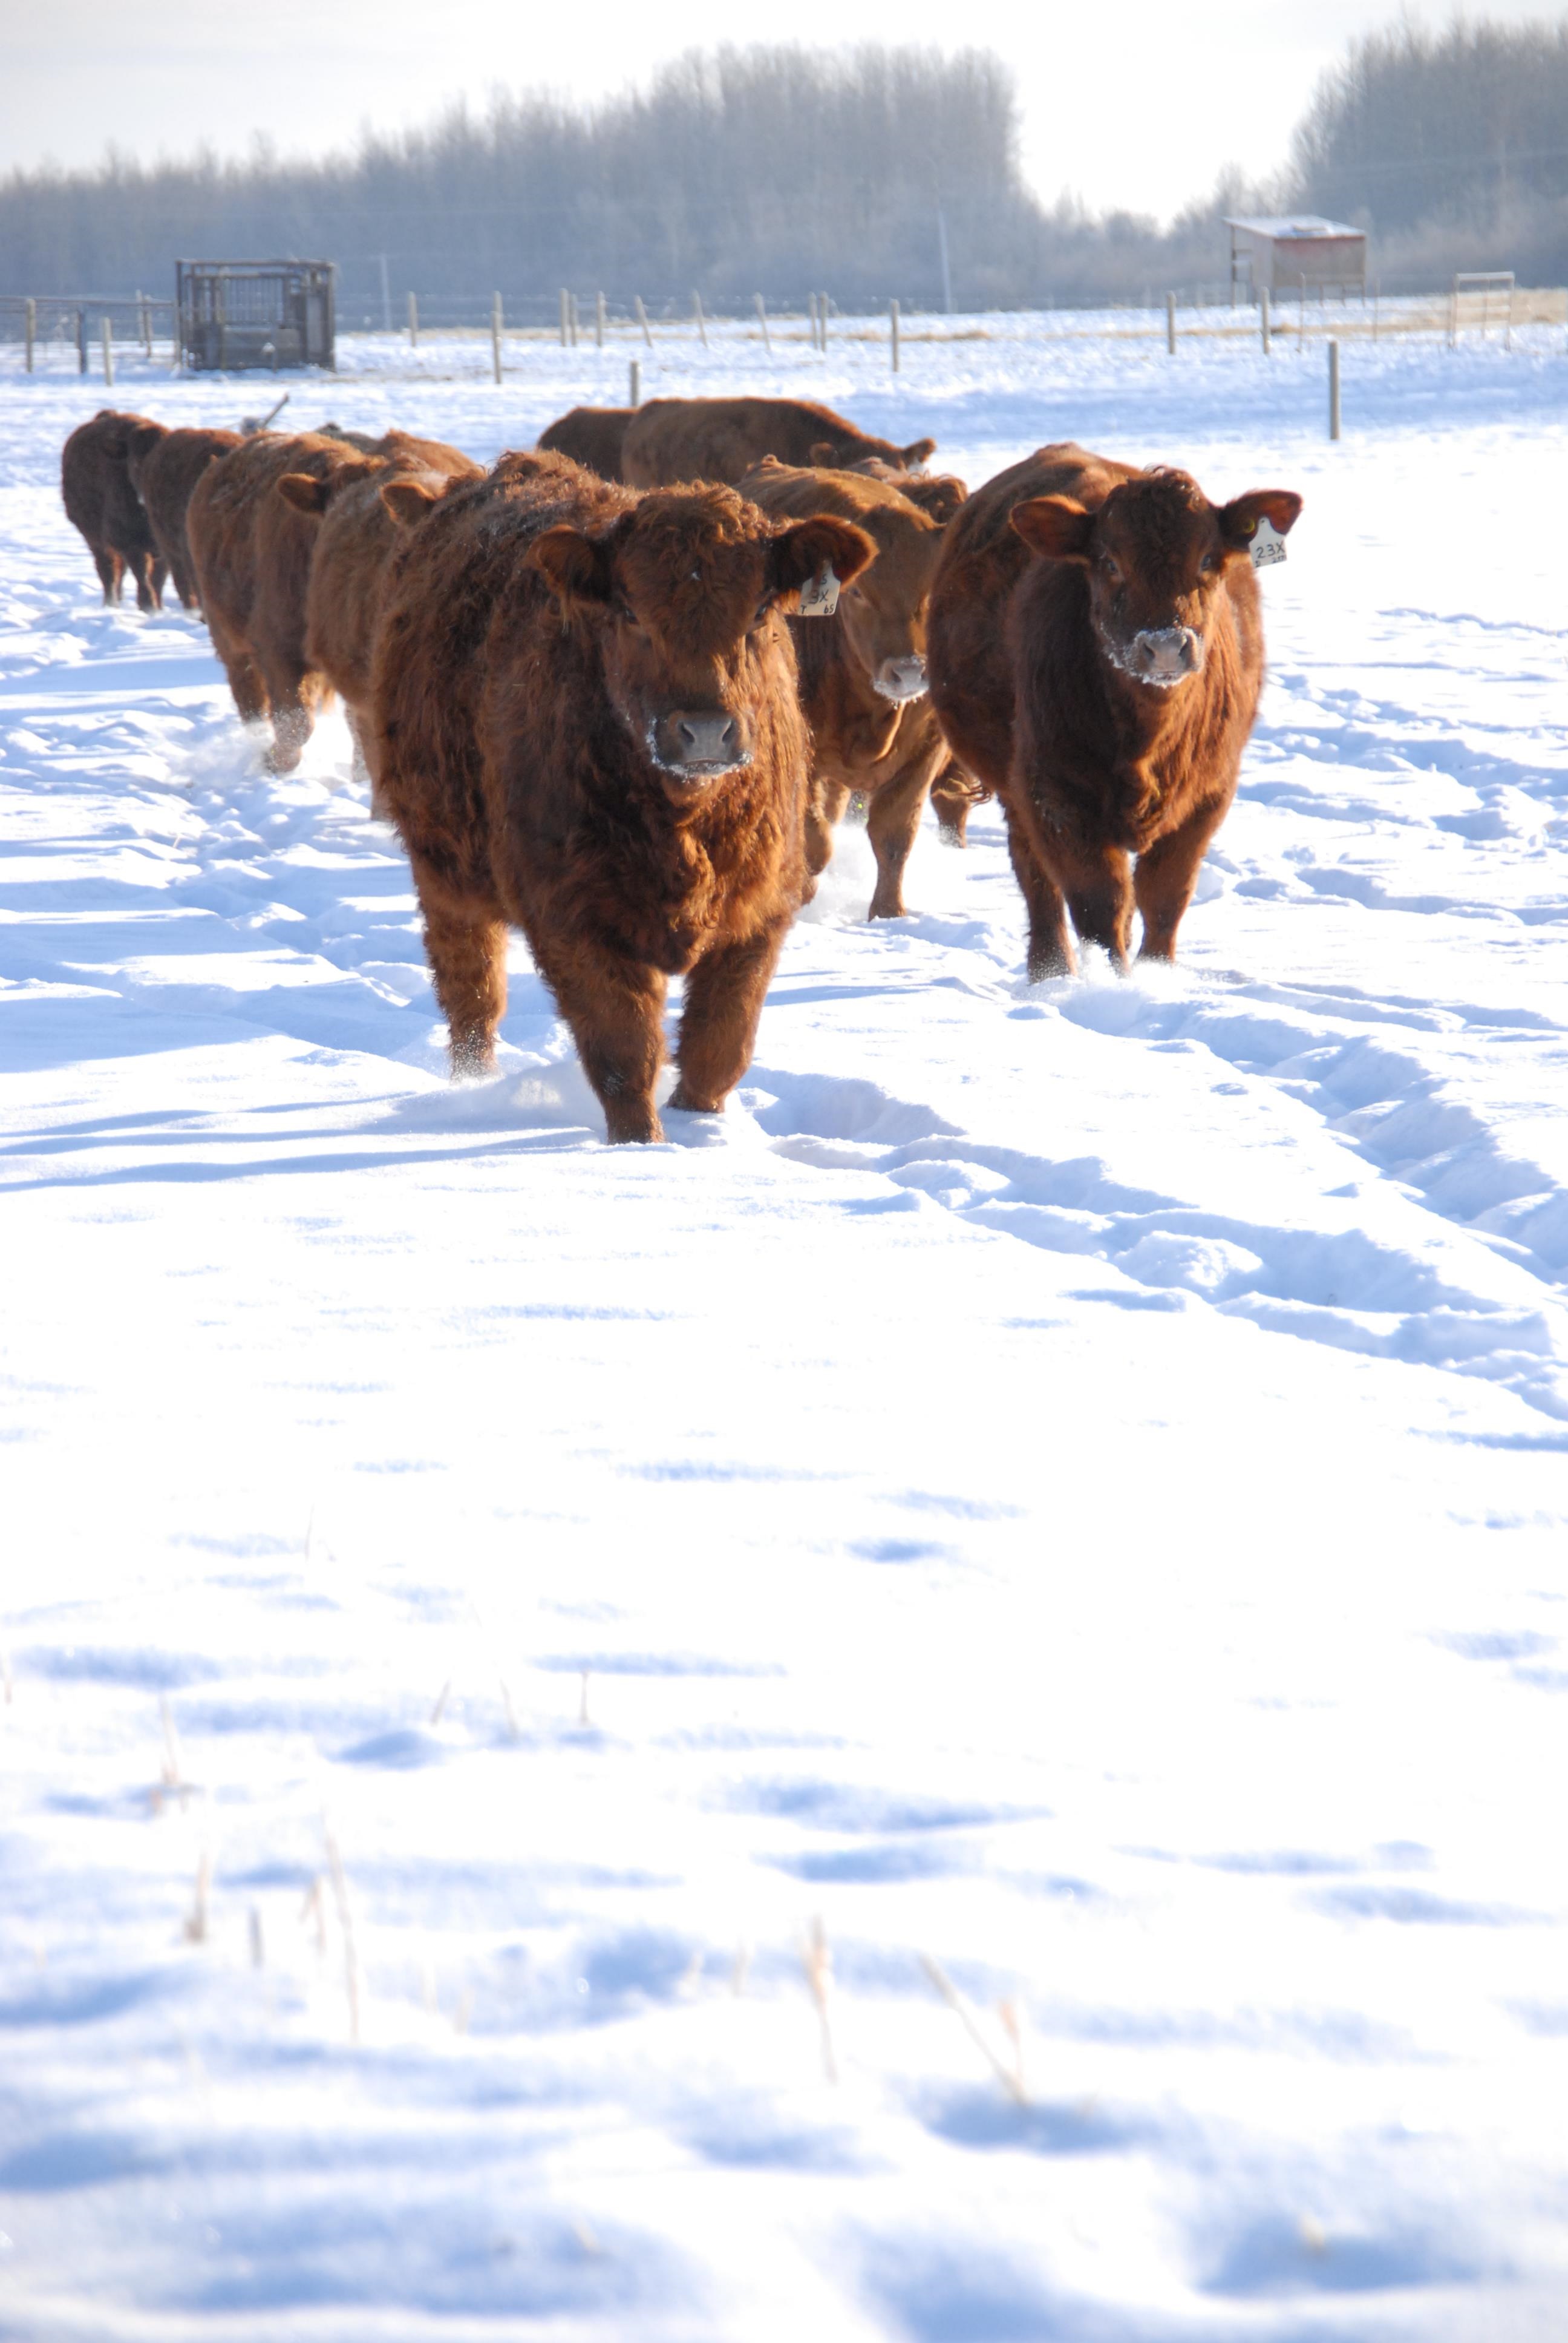 Winter cows